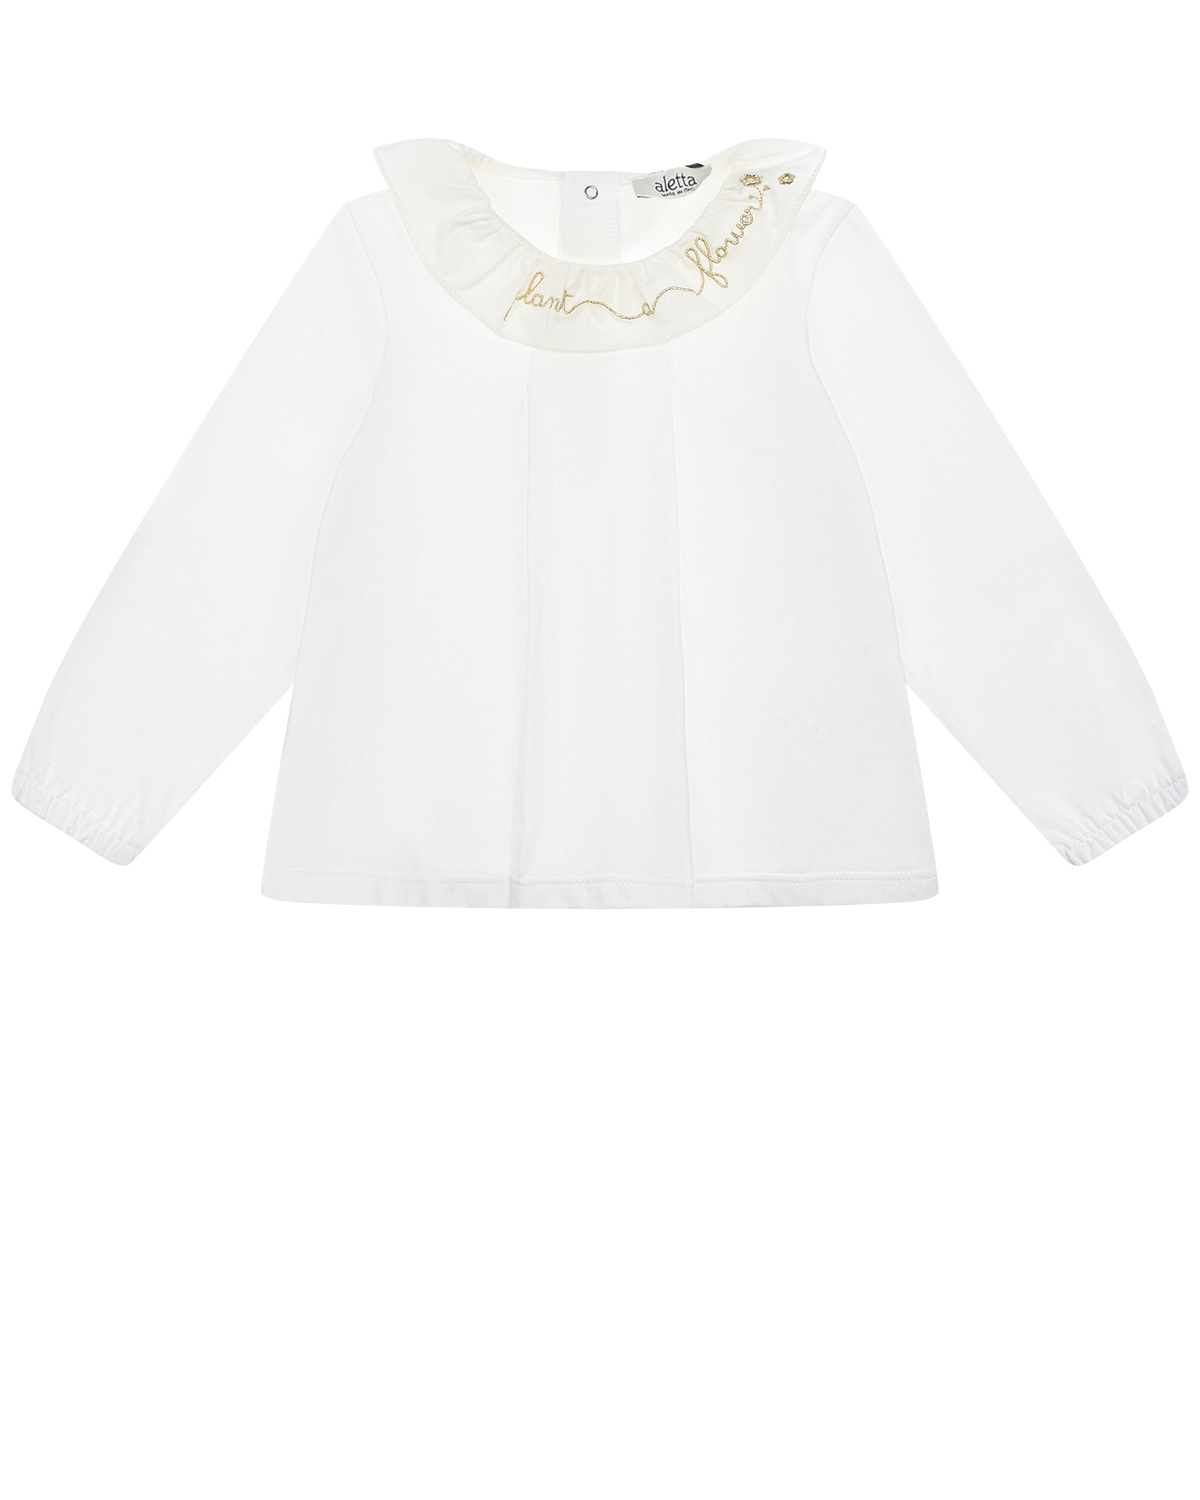 Белая блуза с вышивкой "plant flower" Aletta детская, размер 98, цвет белый - фото 1